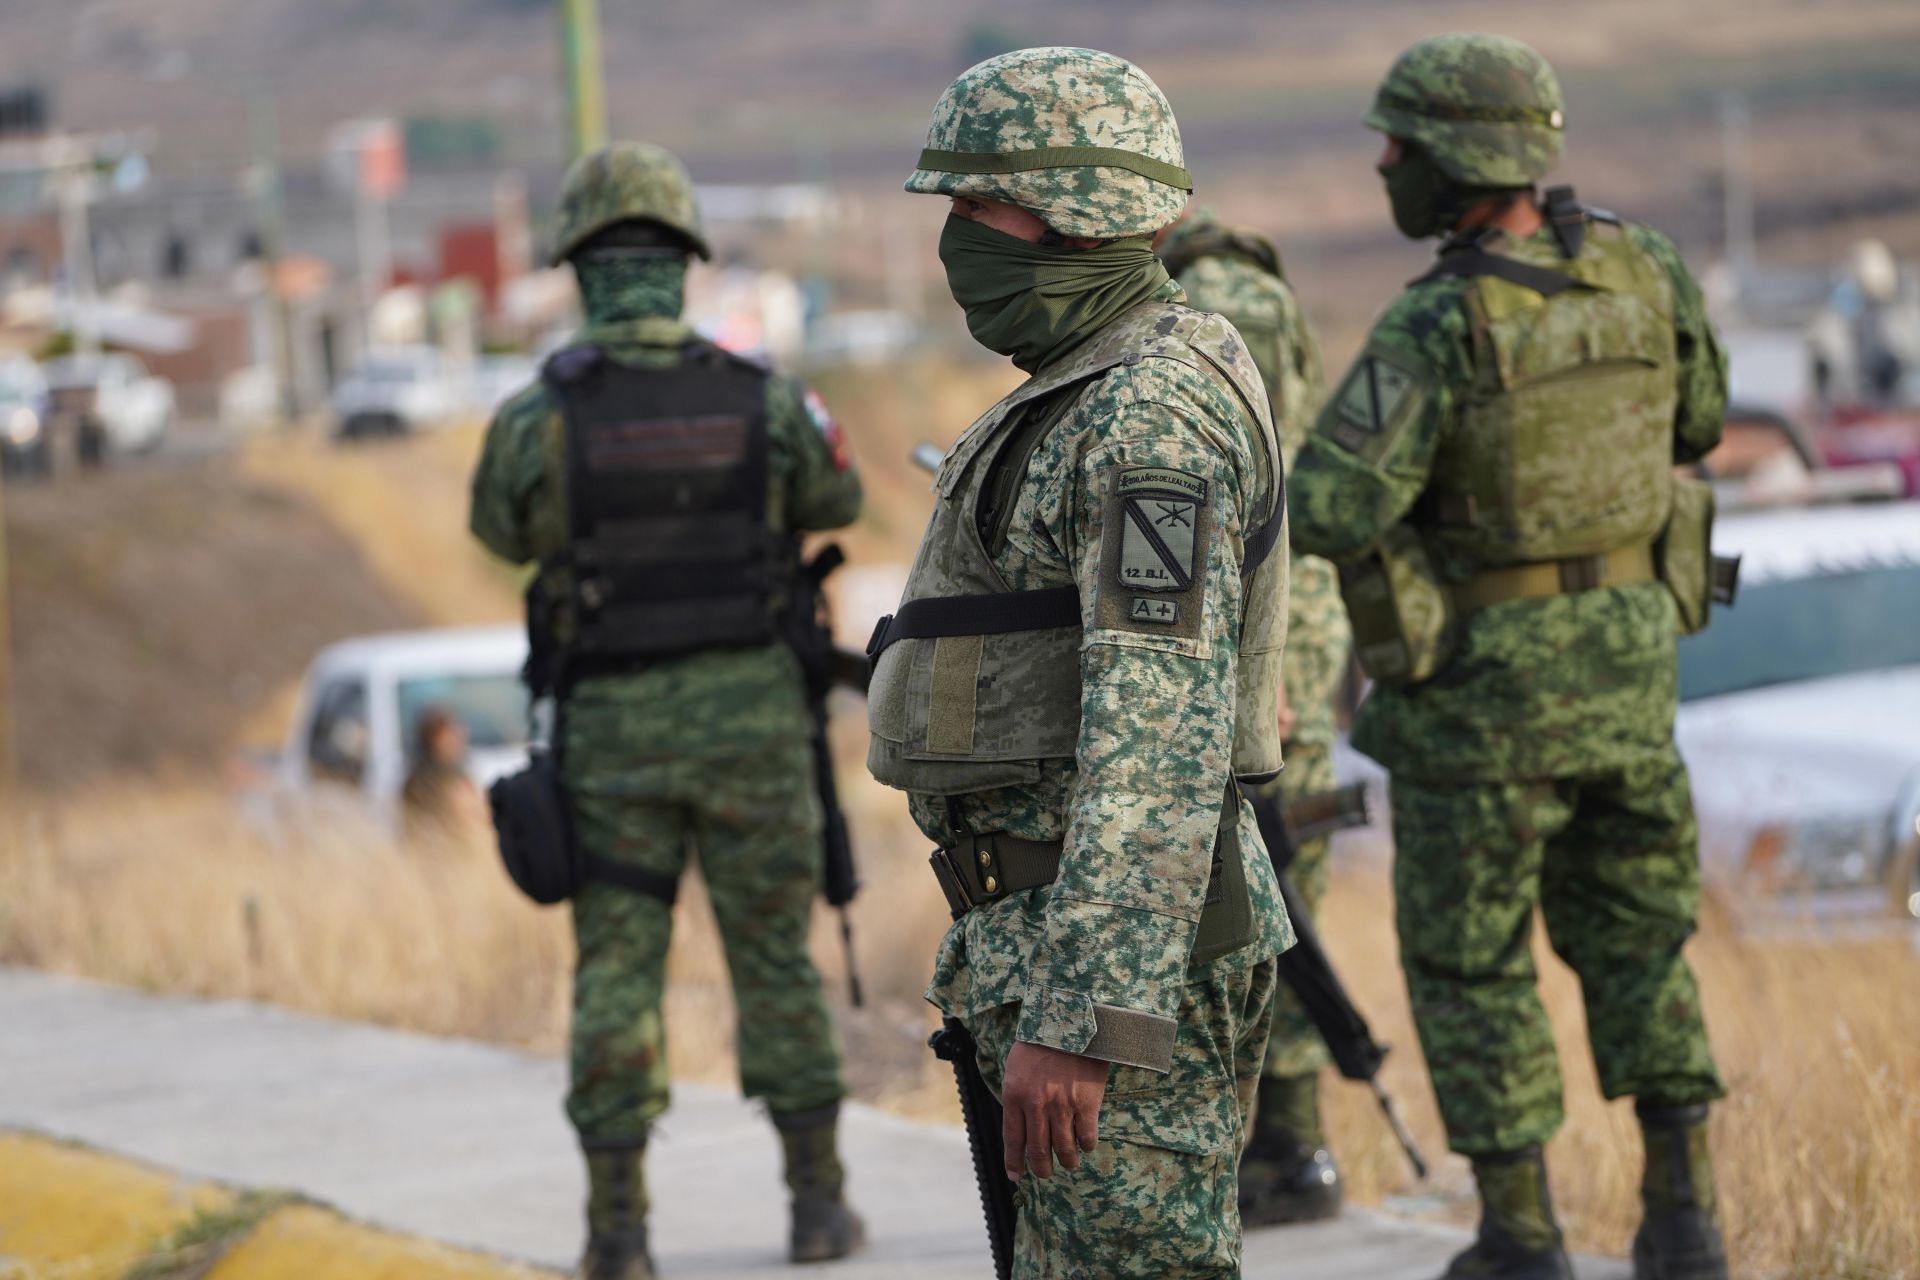 De acuerdo con los documentos clasificados, las tensiones entre las Fuerzas Armadas de México podrían empeorar. FOTO: JUAN JOSÉ ESTRADA SERAFÍN /CUARTOSCURO.COM